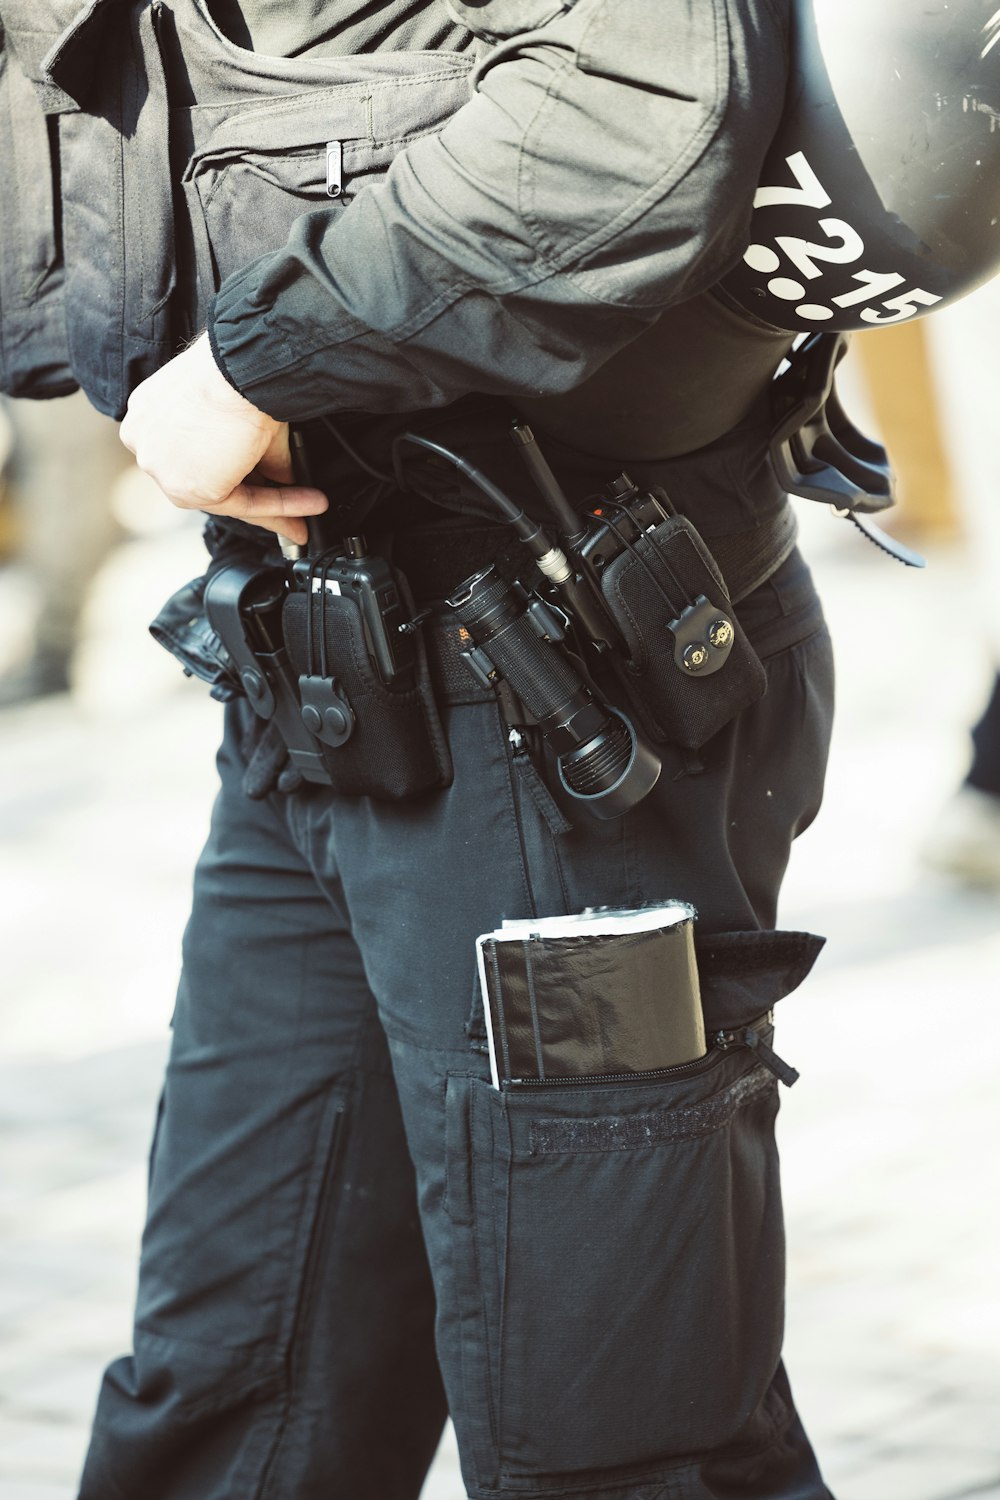 Un oficial de policía sostiene una pistola y un casco